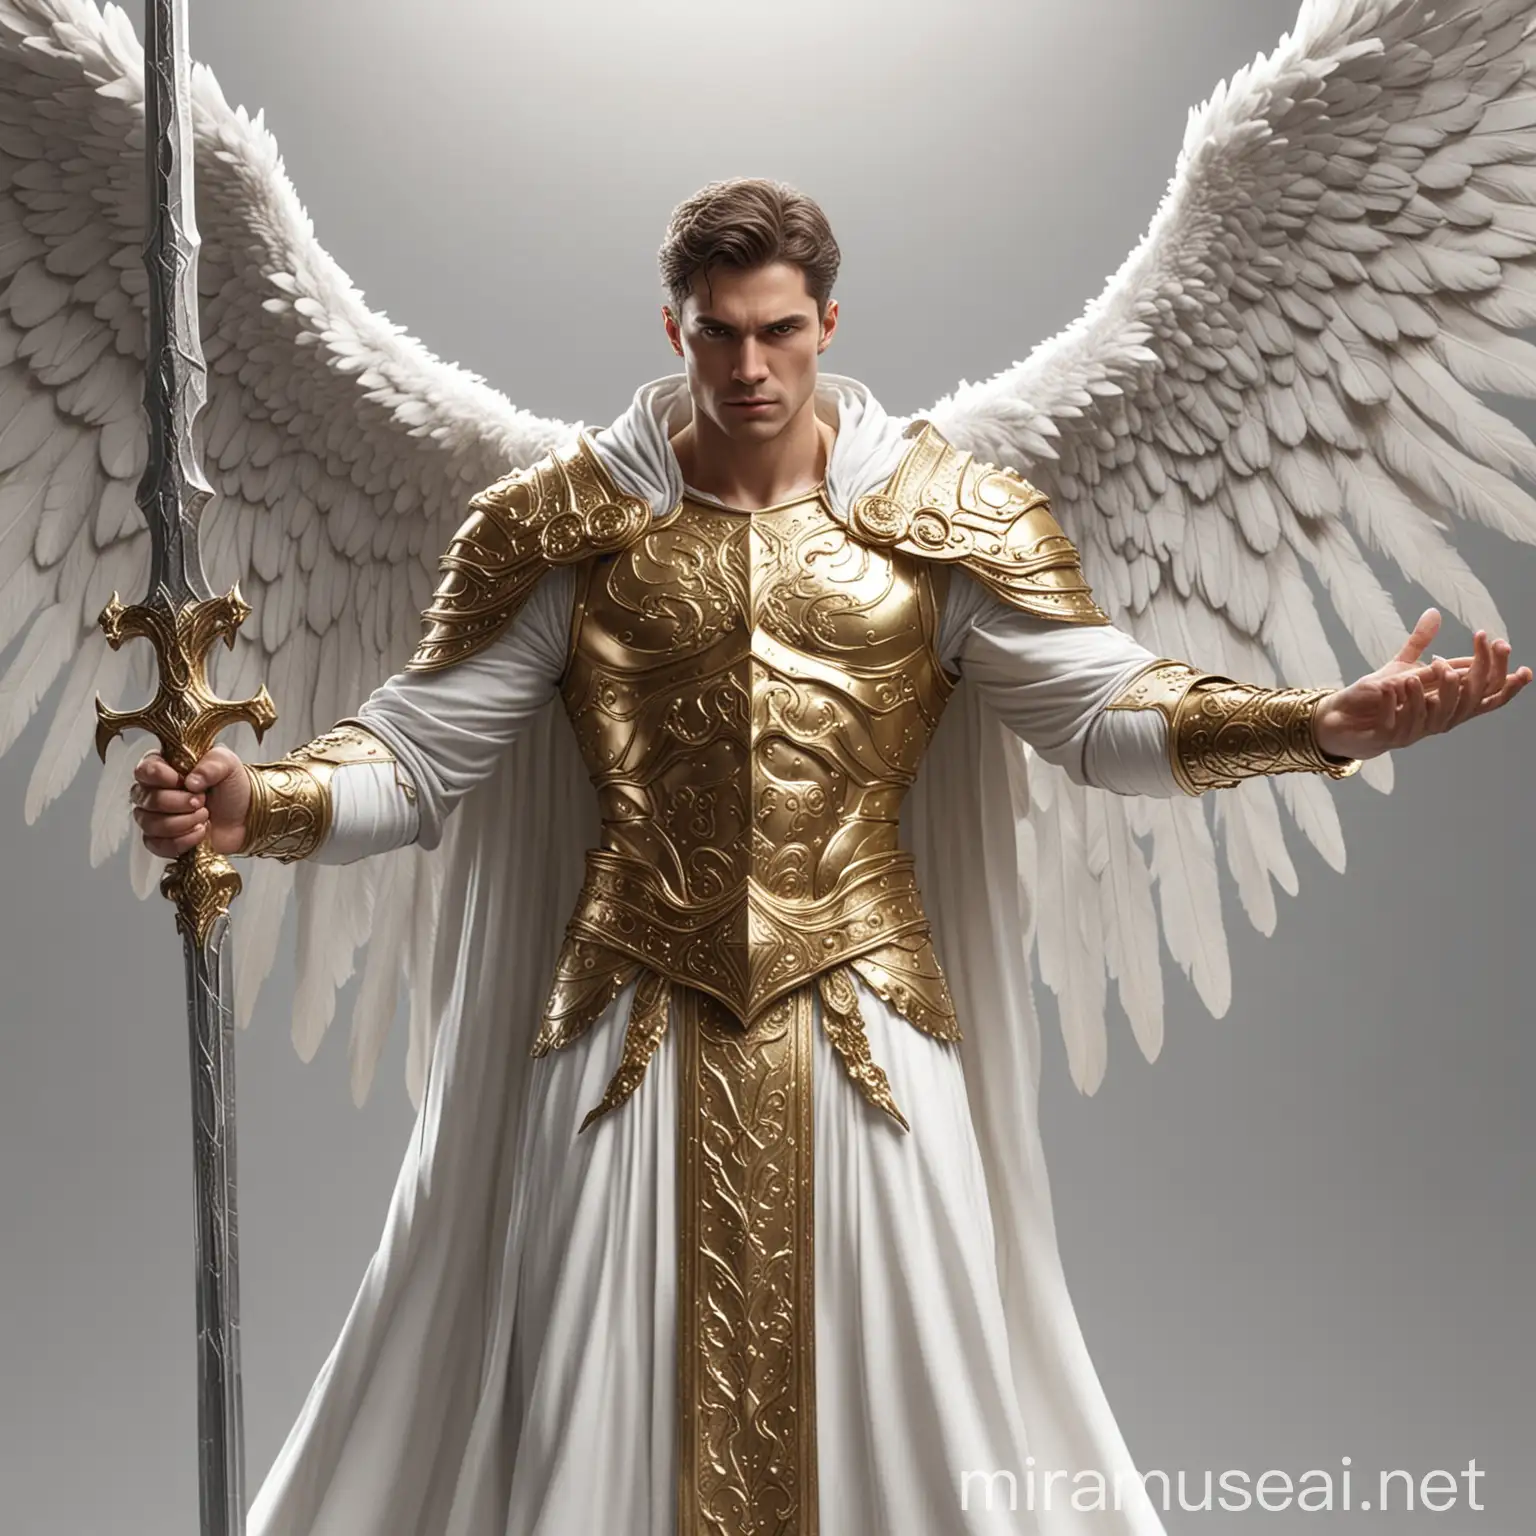 男性天使，六个白色翅膀，头顶白色披风，身穿金色盔甲，两手紧握同一把白银巨剑，正面，全身，中景。4K清晰度，